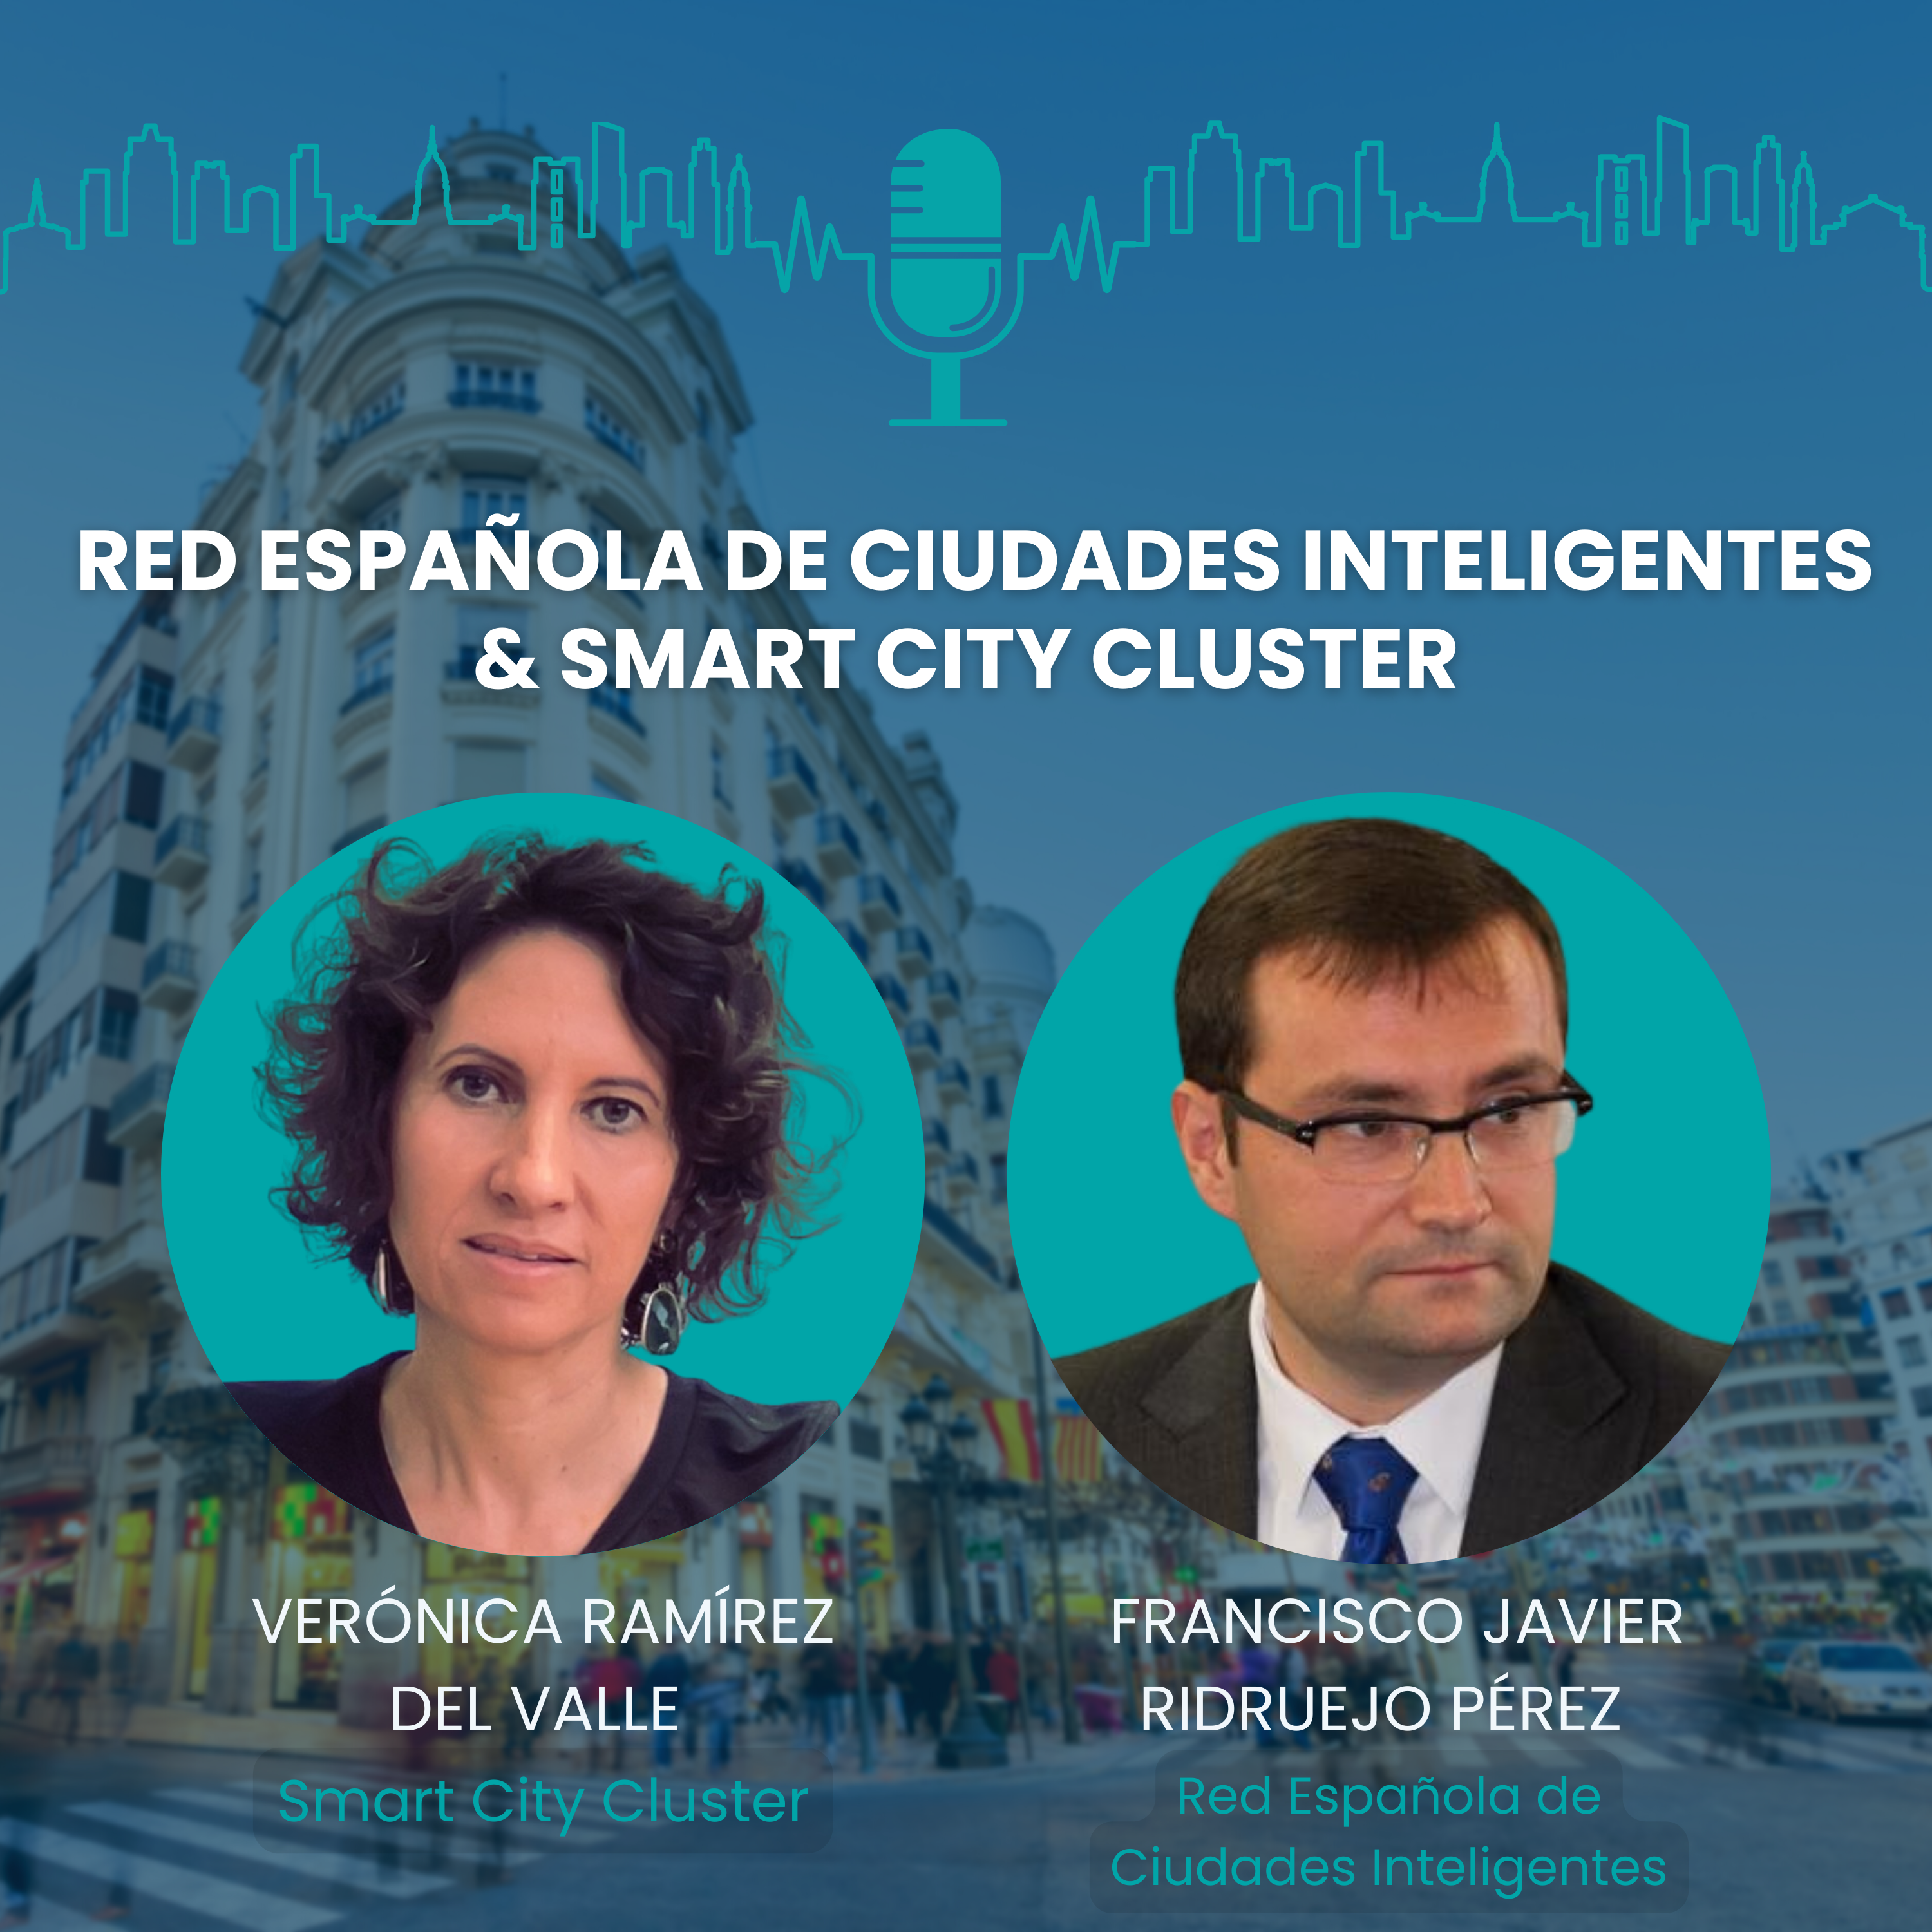 #20 [Spanish] Red Española de Ciudades Inteligentes & Smart City Cluster: "Una ciudad inteligente piensa, escucha, mide y toma decisiones"